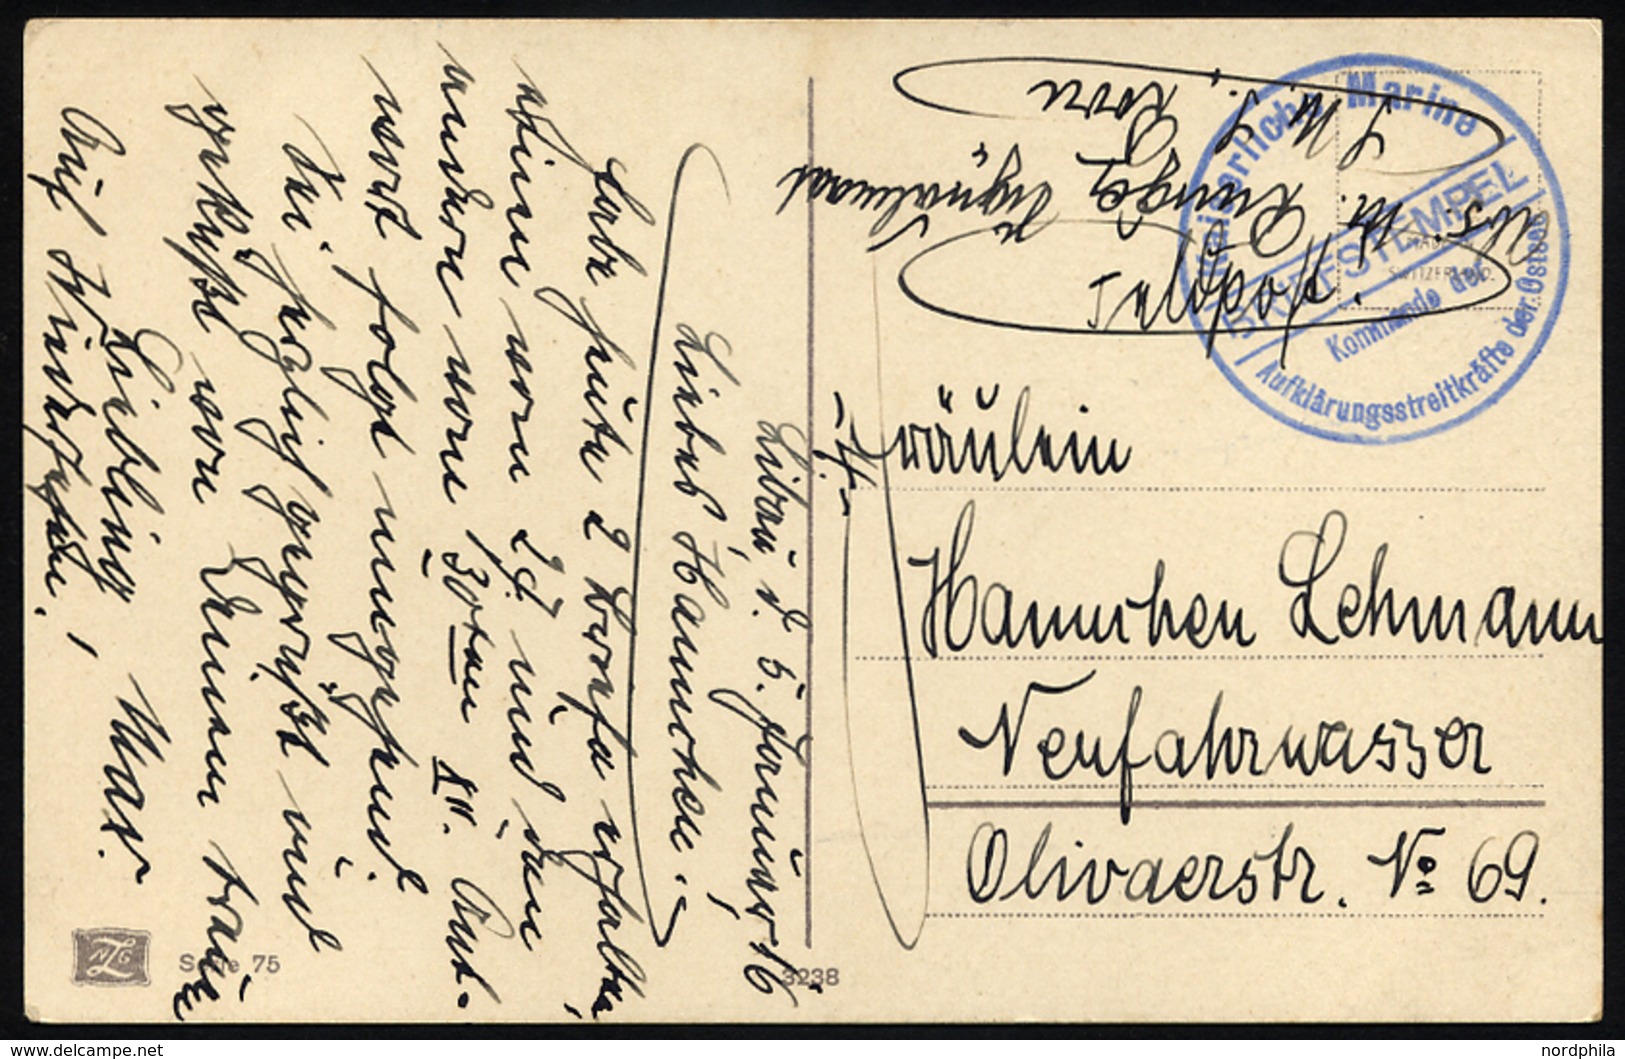 MSP VON 1914 - 1918 (Großer Kreuzer ROON), 5.1.1916, Blauer Briefstempel, Feldpost-Ansichtskarte Von Bord Der Roon, Prac - Turkey (offices)